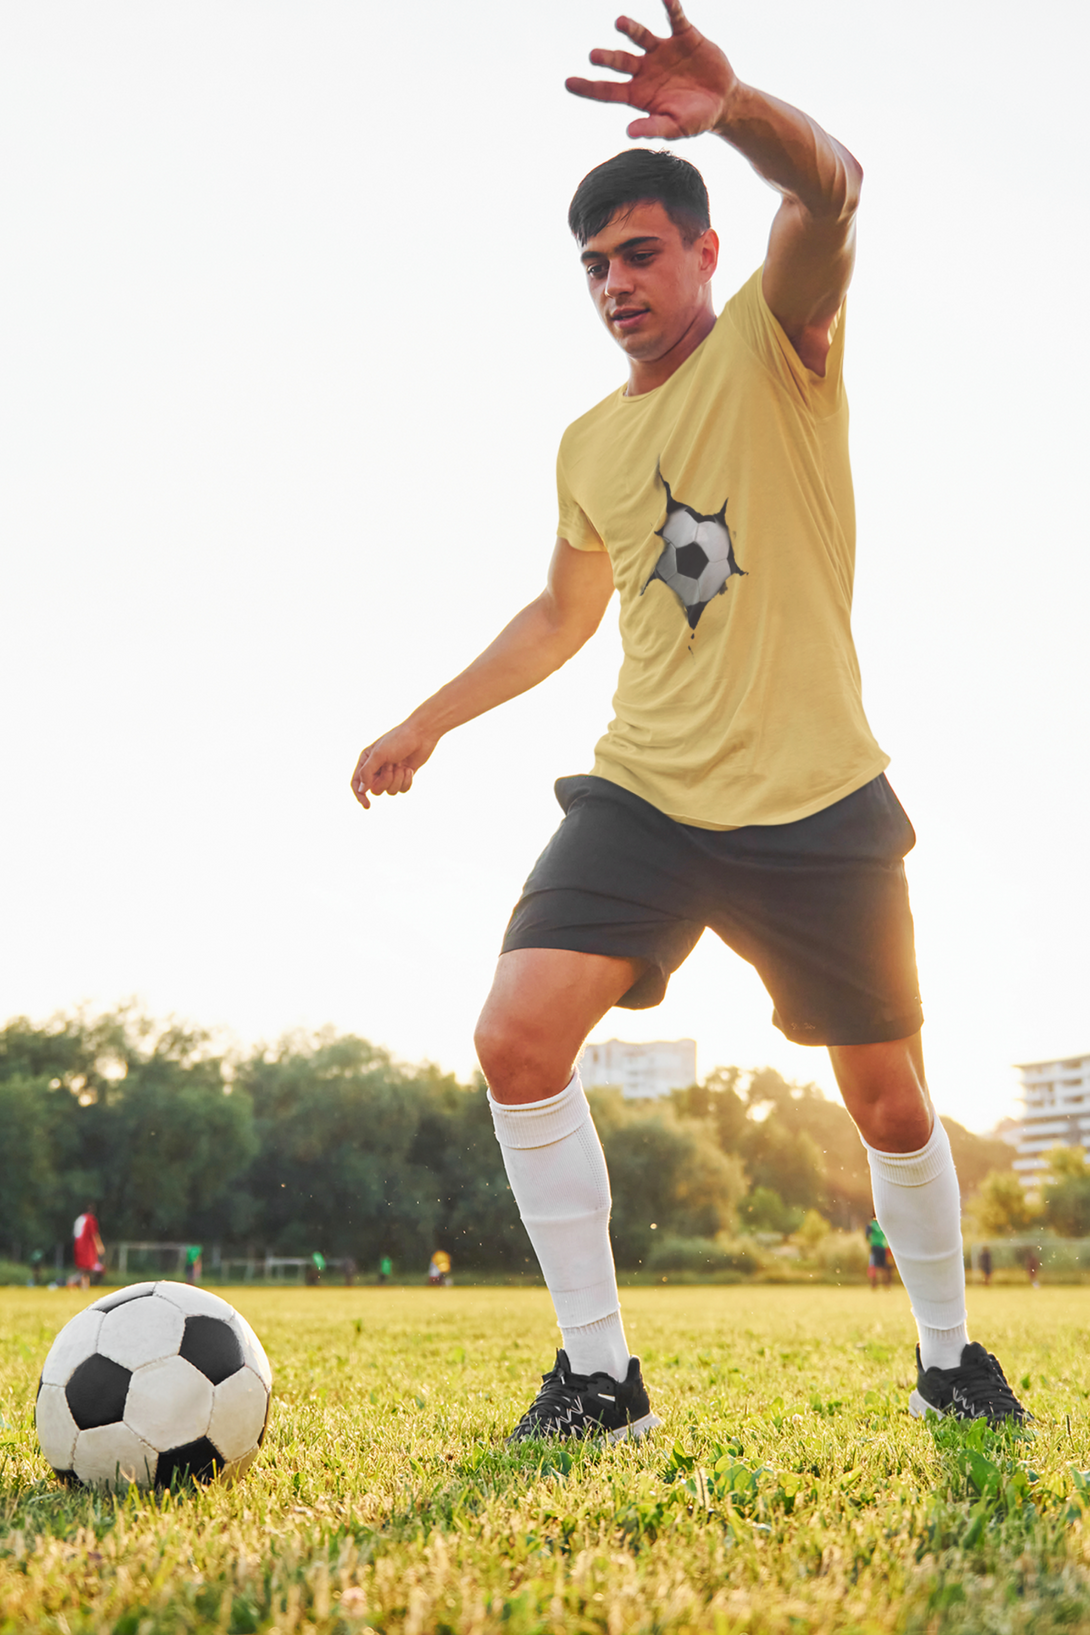 Qatar Soccer Break Printed T-Shirt For Men - WowWaves - 4